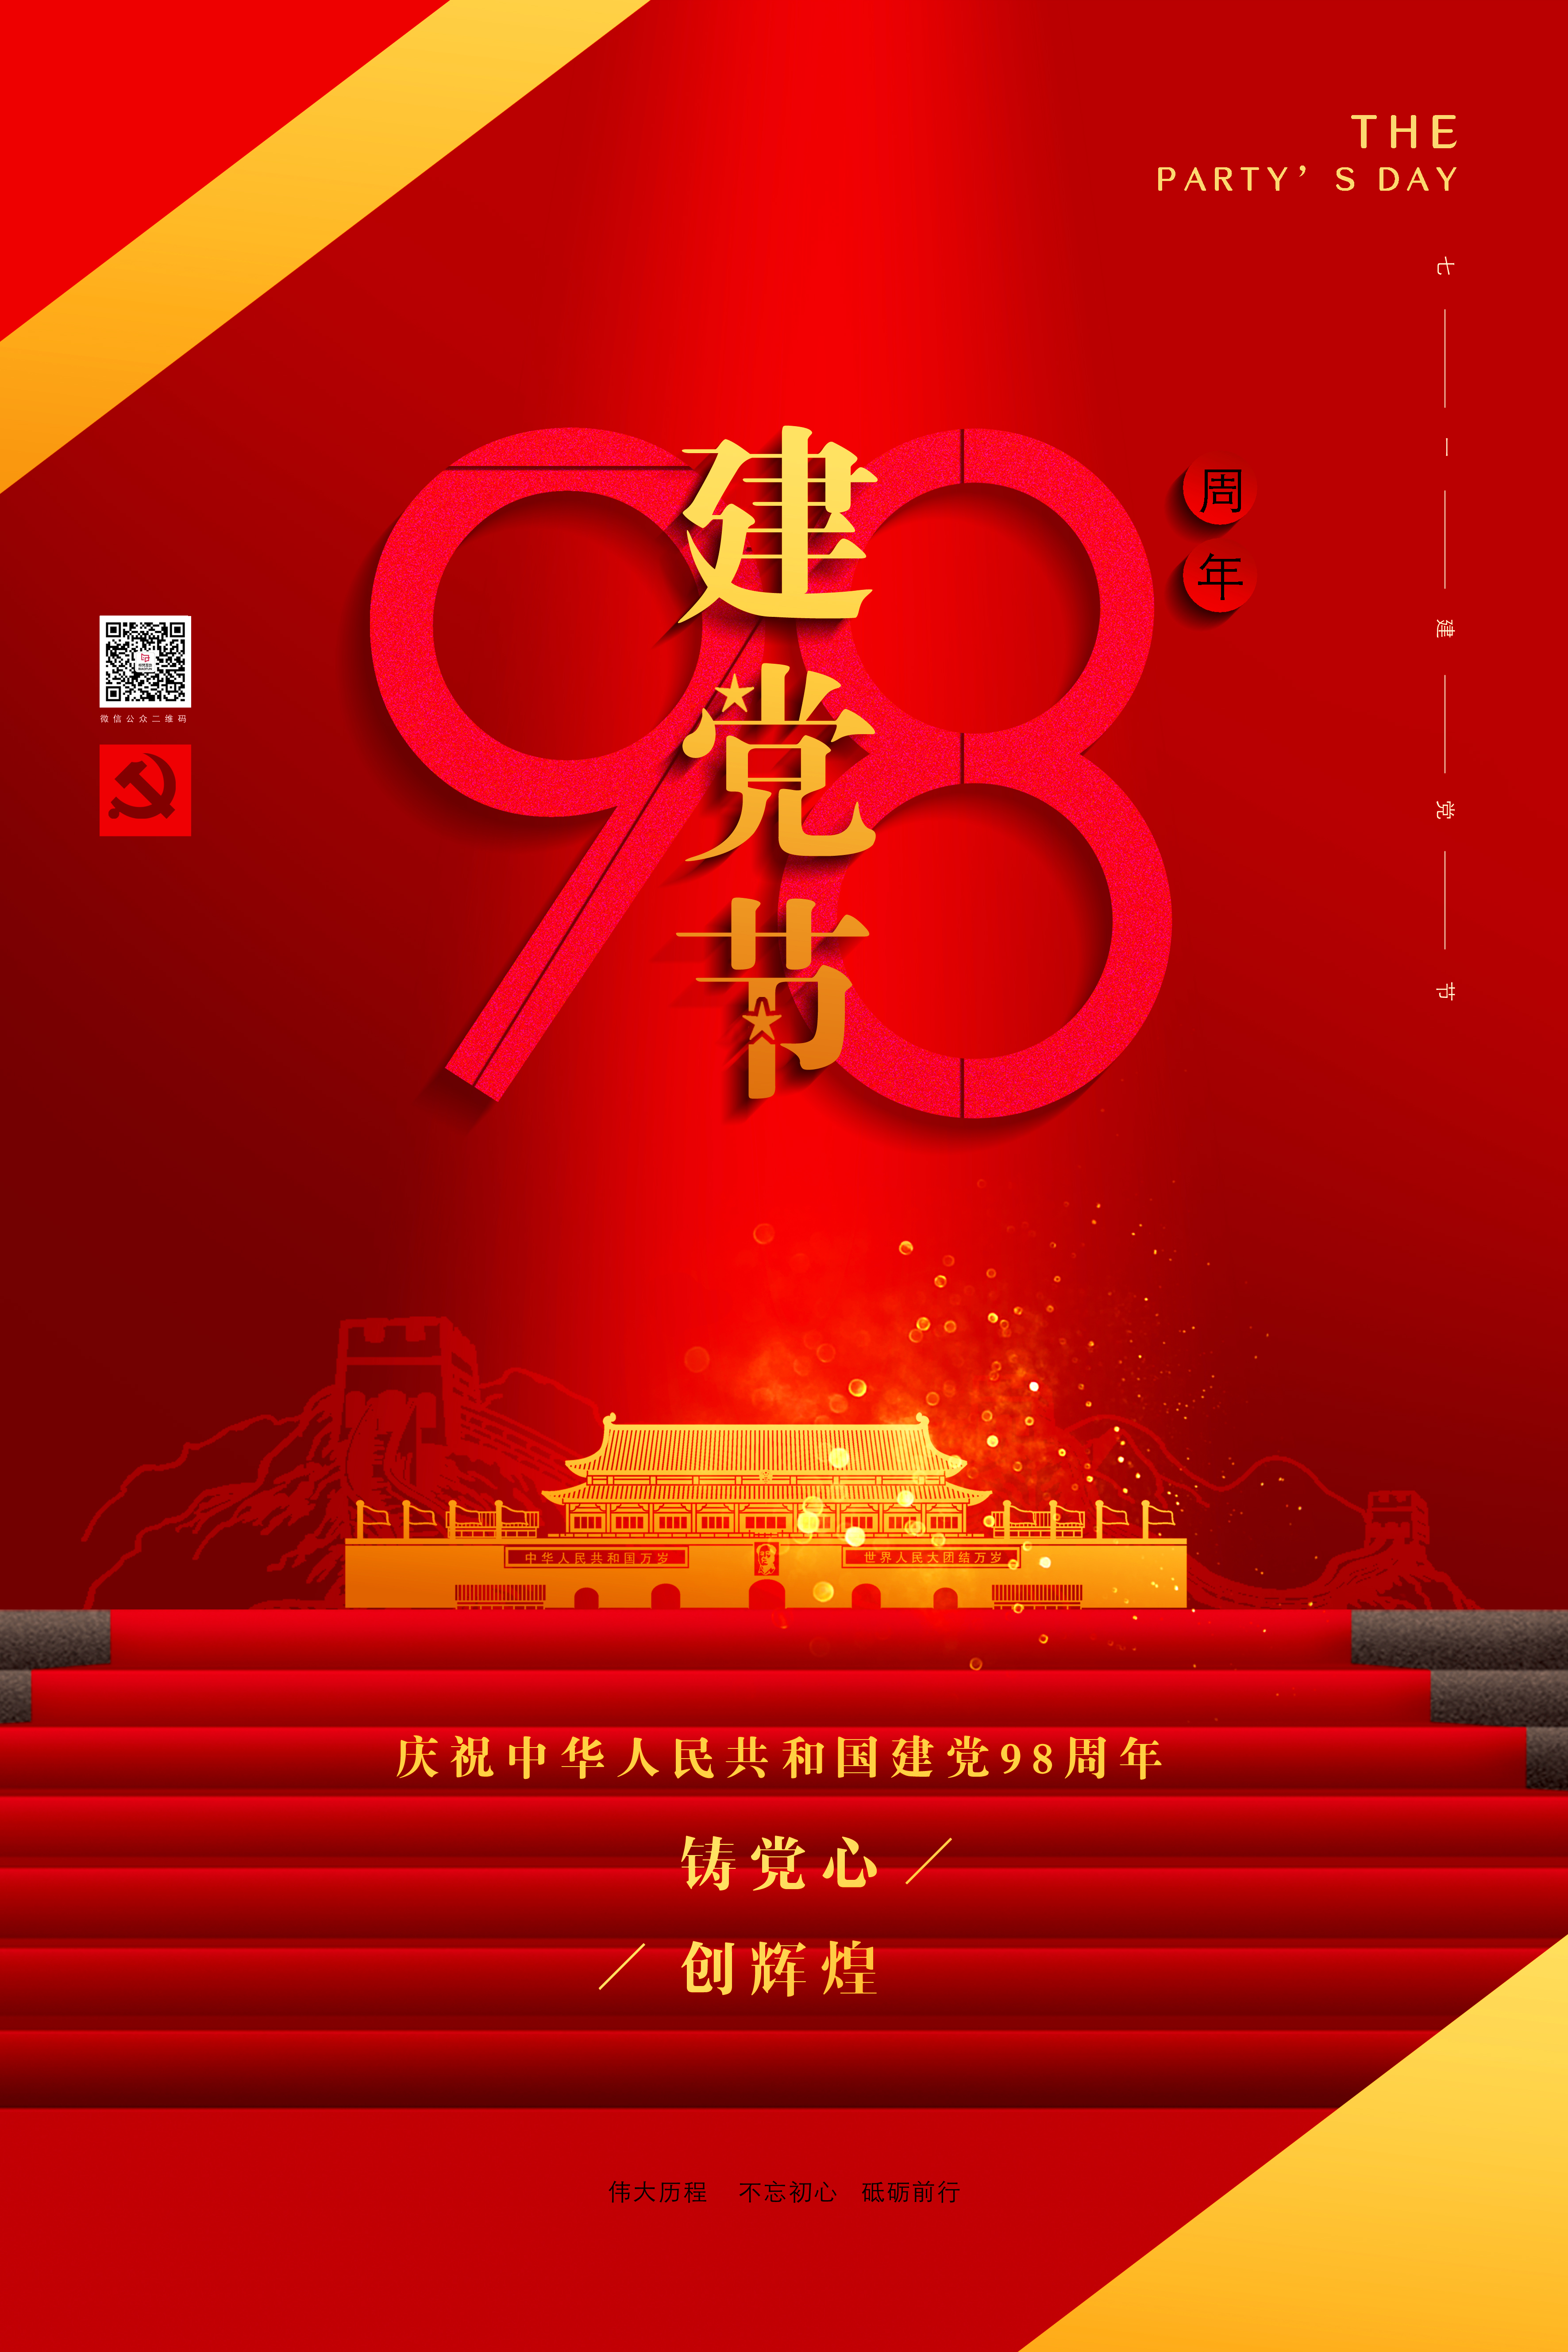 党的98岁生日。祝福党，也祝福中国！